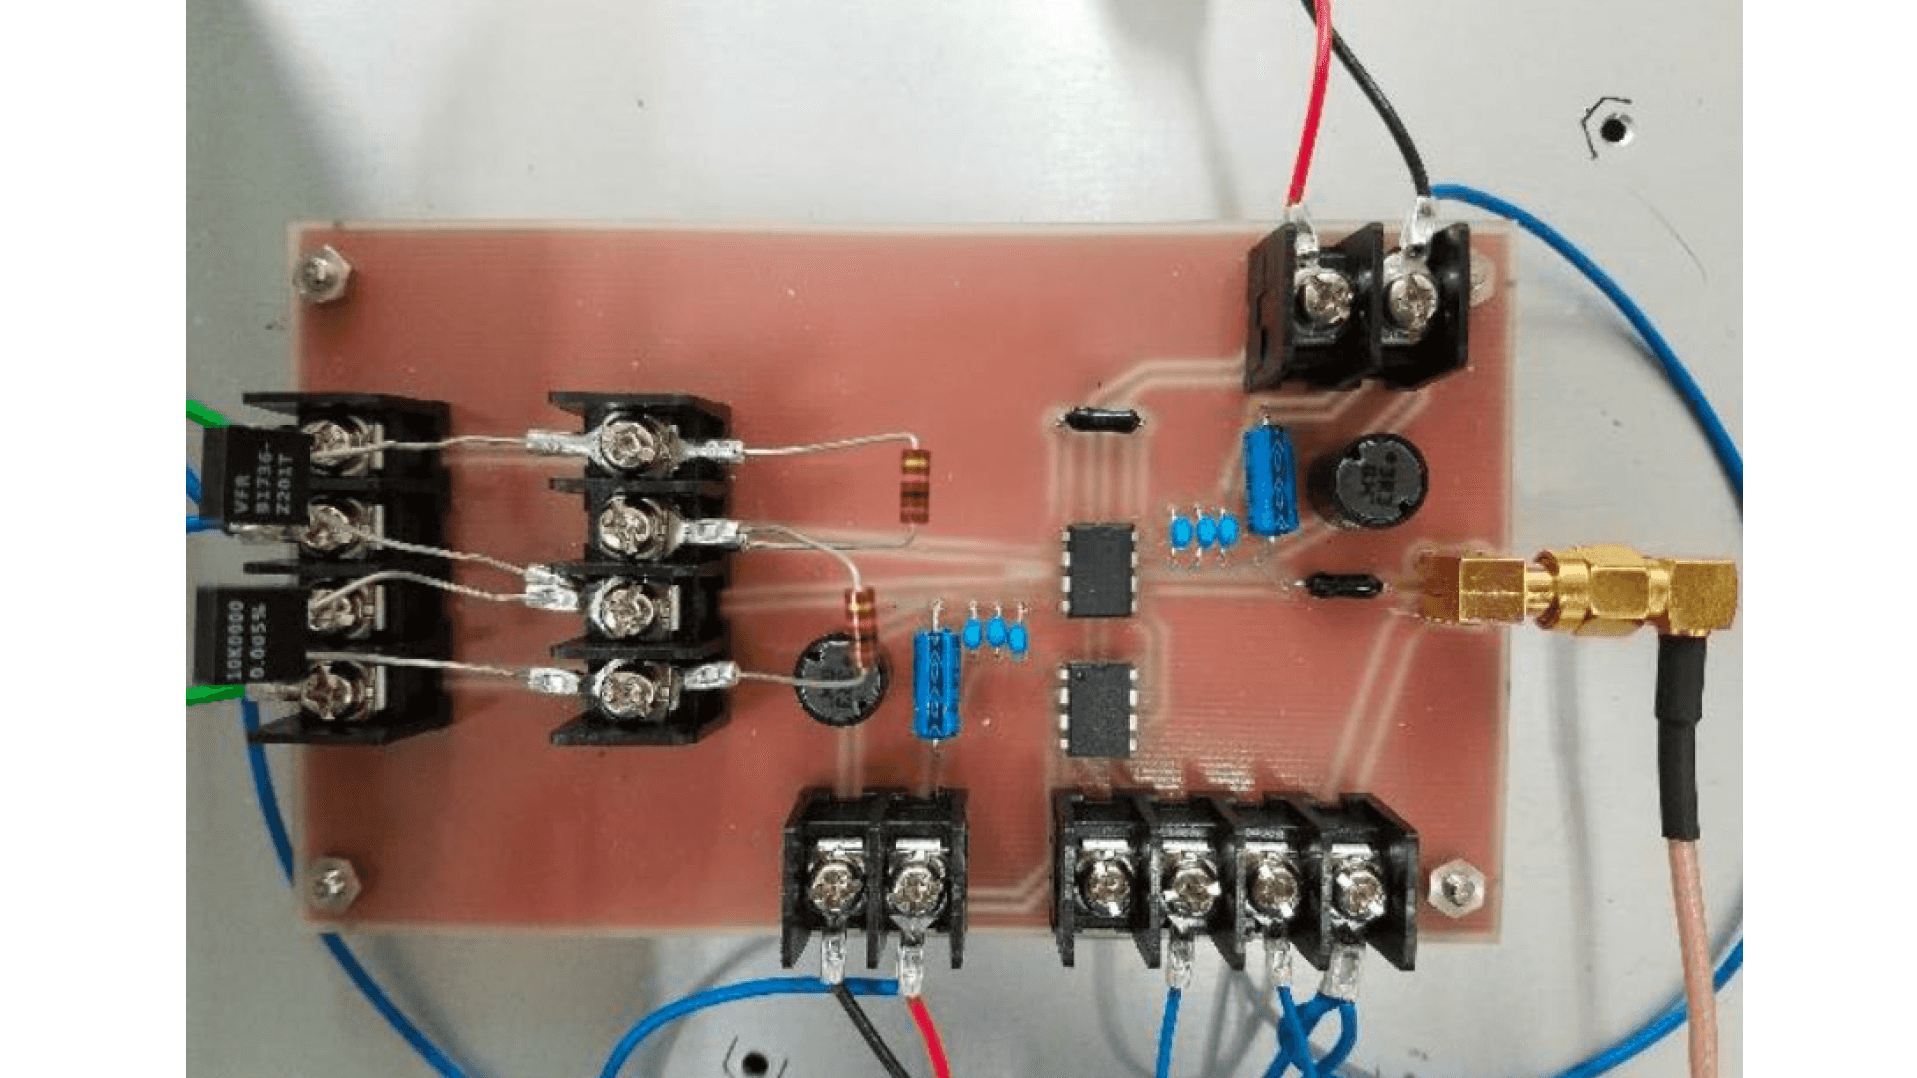 図2 試作した抵抗器の歪み測定回路基板。素子を交換しやすいように端子台に抵抗器を設置する構造としている。